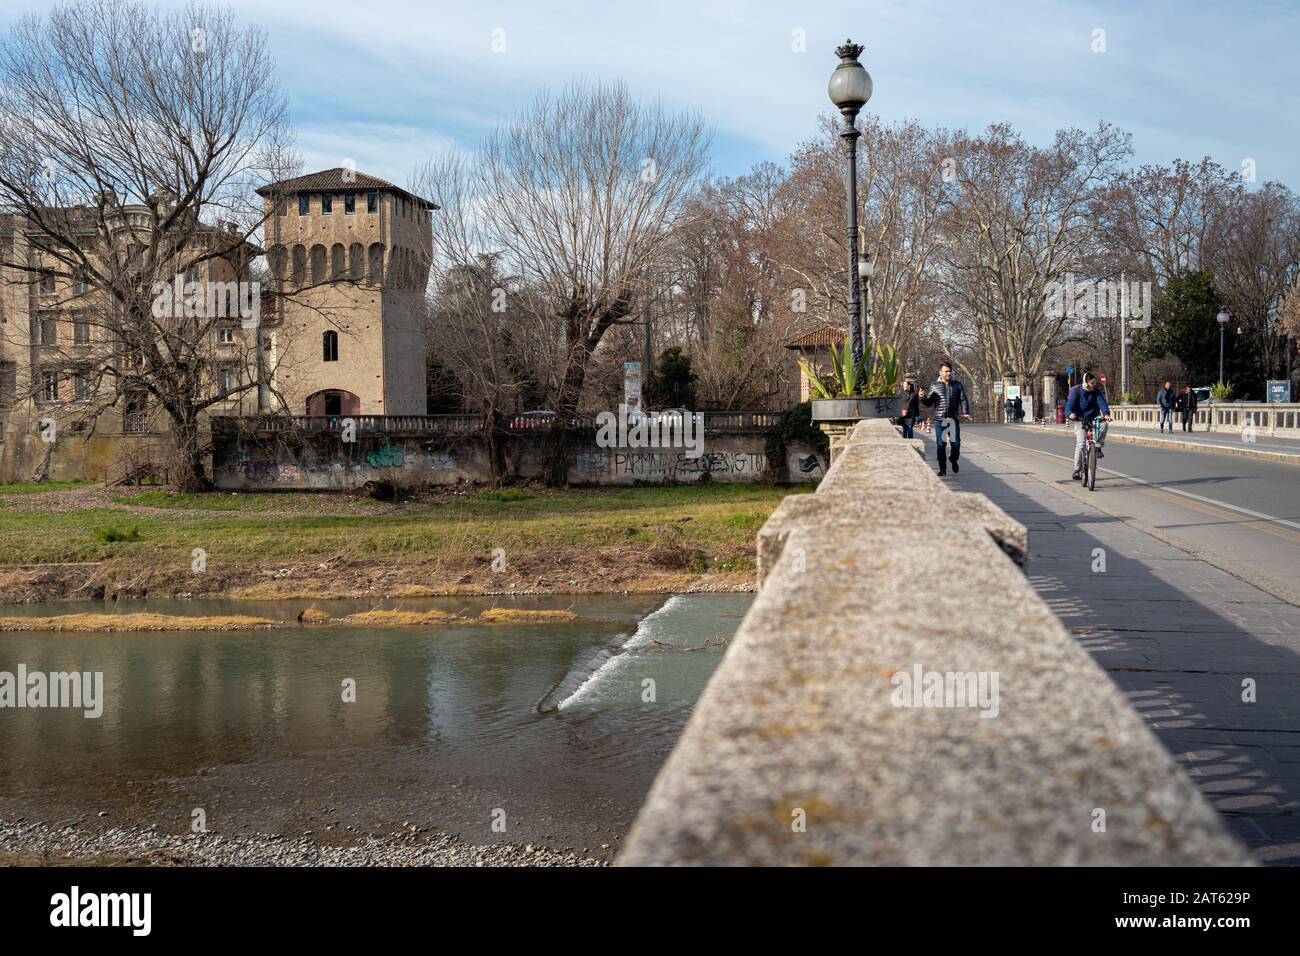 Parma, Italien - 30. Januar 2020: Blick auf die Ponte Giuseppe Verdi mit Menschen, die spazieren gehen und Wasserströme führen Stockfoto